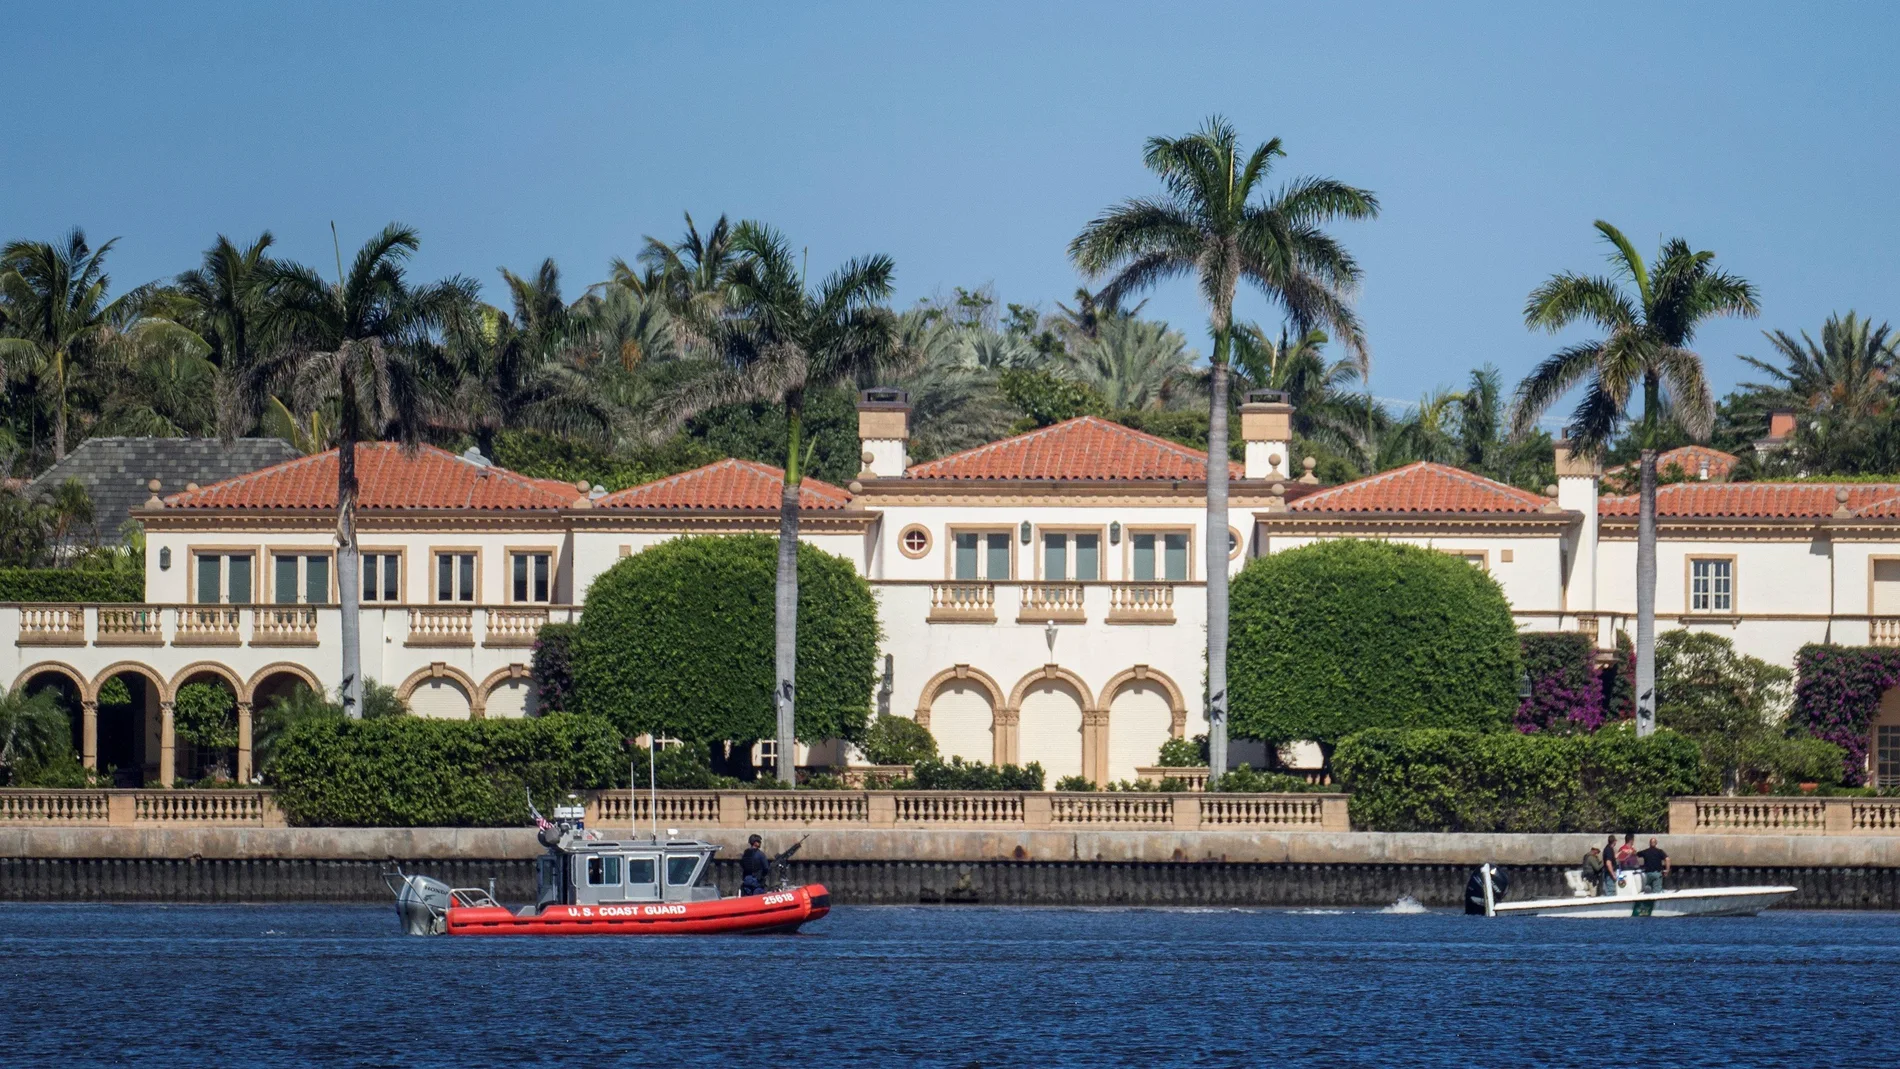 Fotografía de archivo fechada el 18 de abril de 2018 que muestra un bote de la Guardia Costera estadounidense estacionado frente al club Mar-a-Lago, mansión del presidente Donald Trump en Palm Beach, Florida